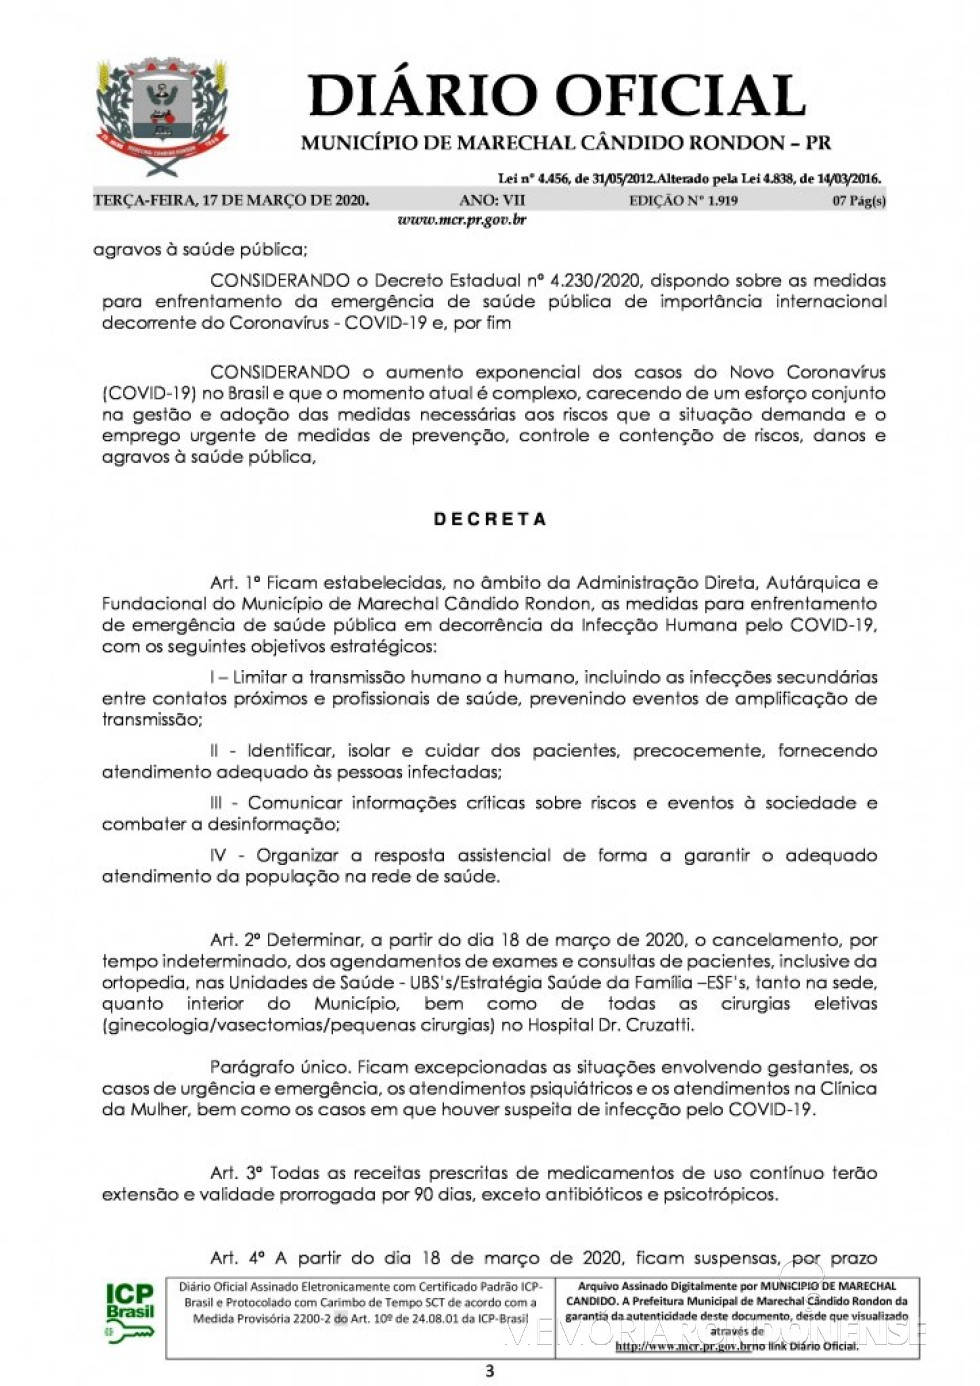 || Página 2 do Decreto nº 071/2020, assinado pelo Poder Executivo de Marechal Cândido Rondon.
Imagem: Acervo Diário Eletrônico do Município - FOTO 16 - 